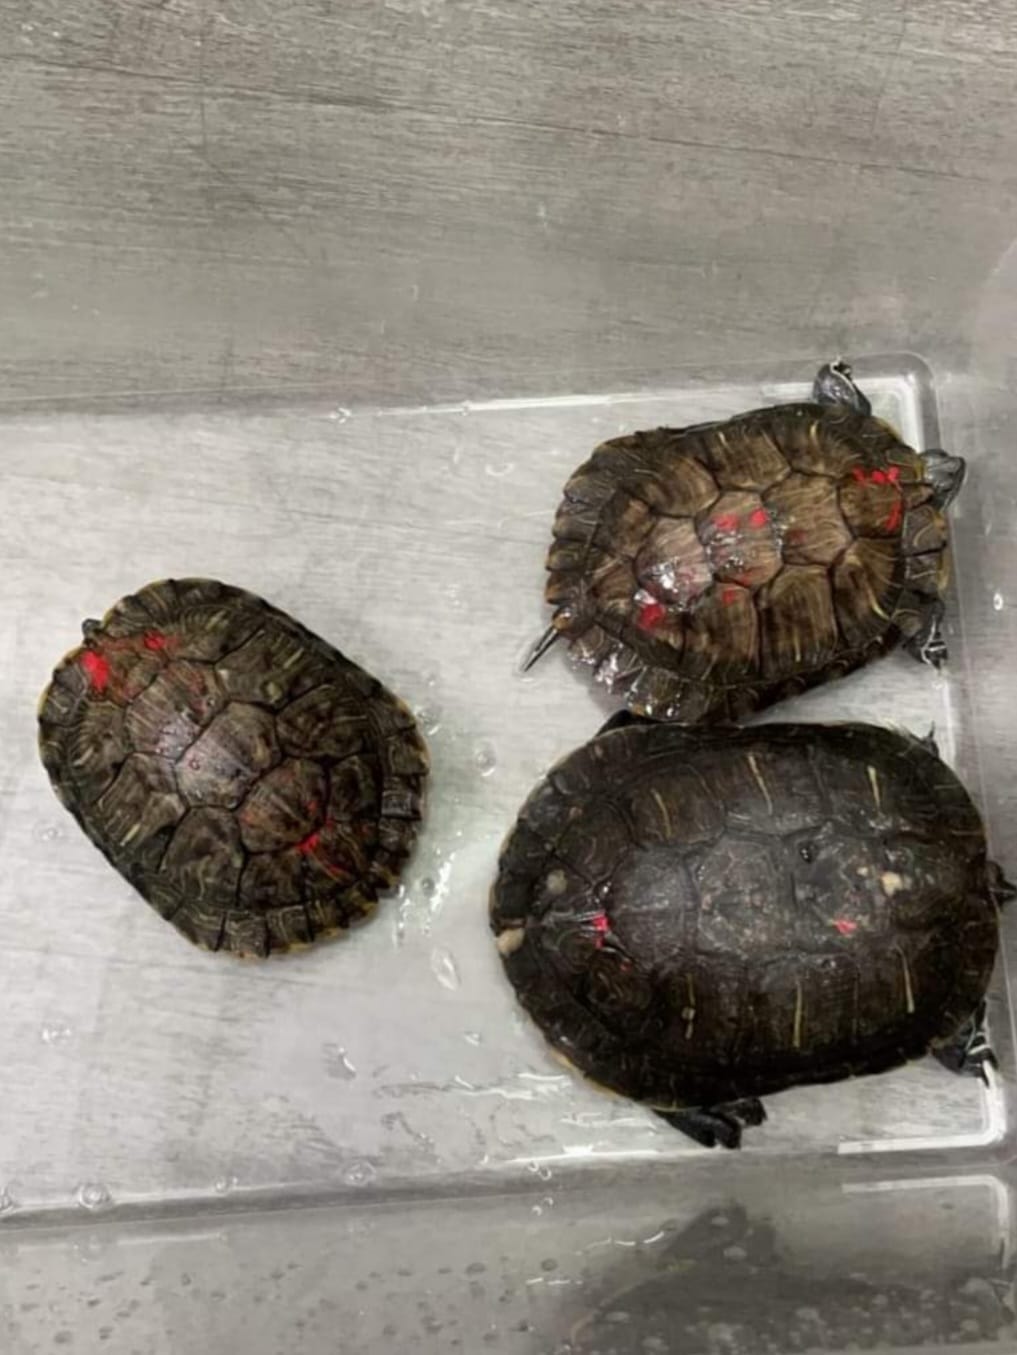 有團體即場拯救被放入海的淡水巴西龜。香港兩棲及爬蟲協會提供圖片